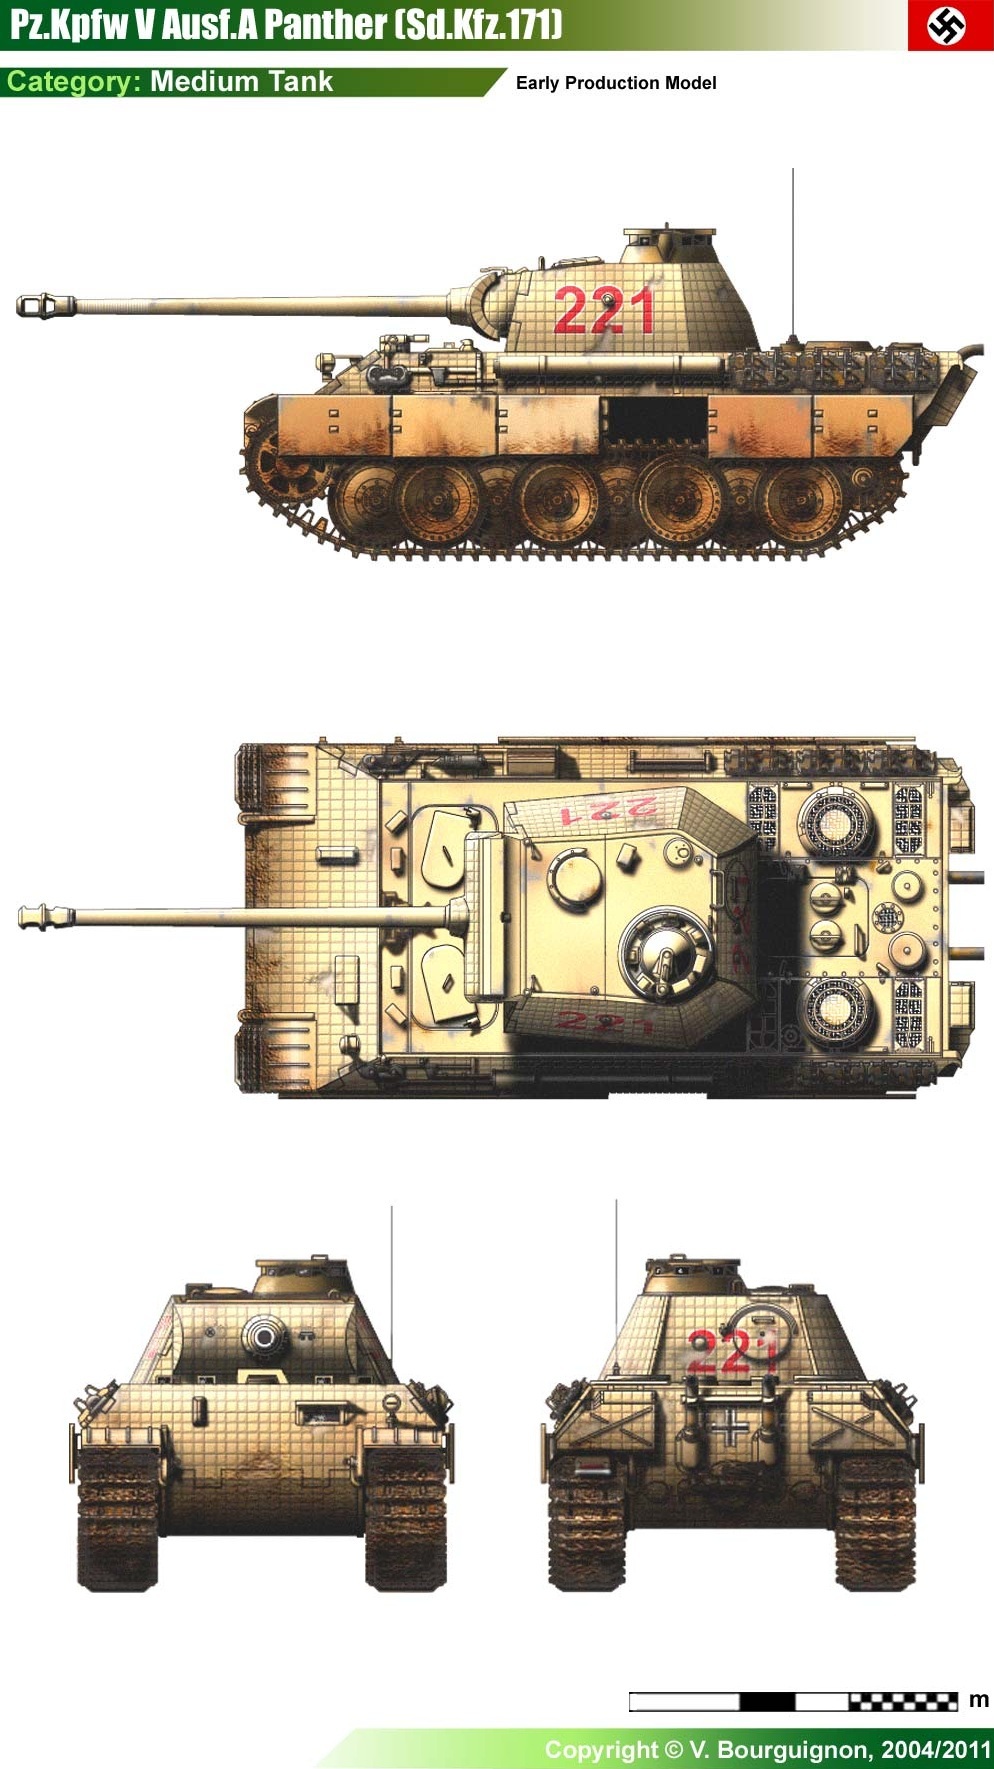 Тяжелый танк PzKpfw V «Panther» Ausf A (SdKfz 171).